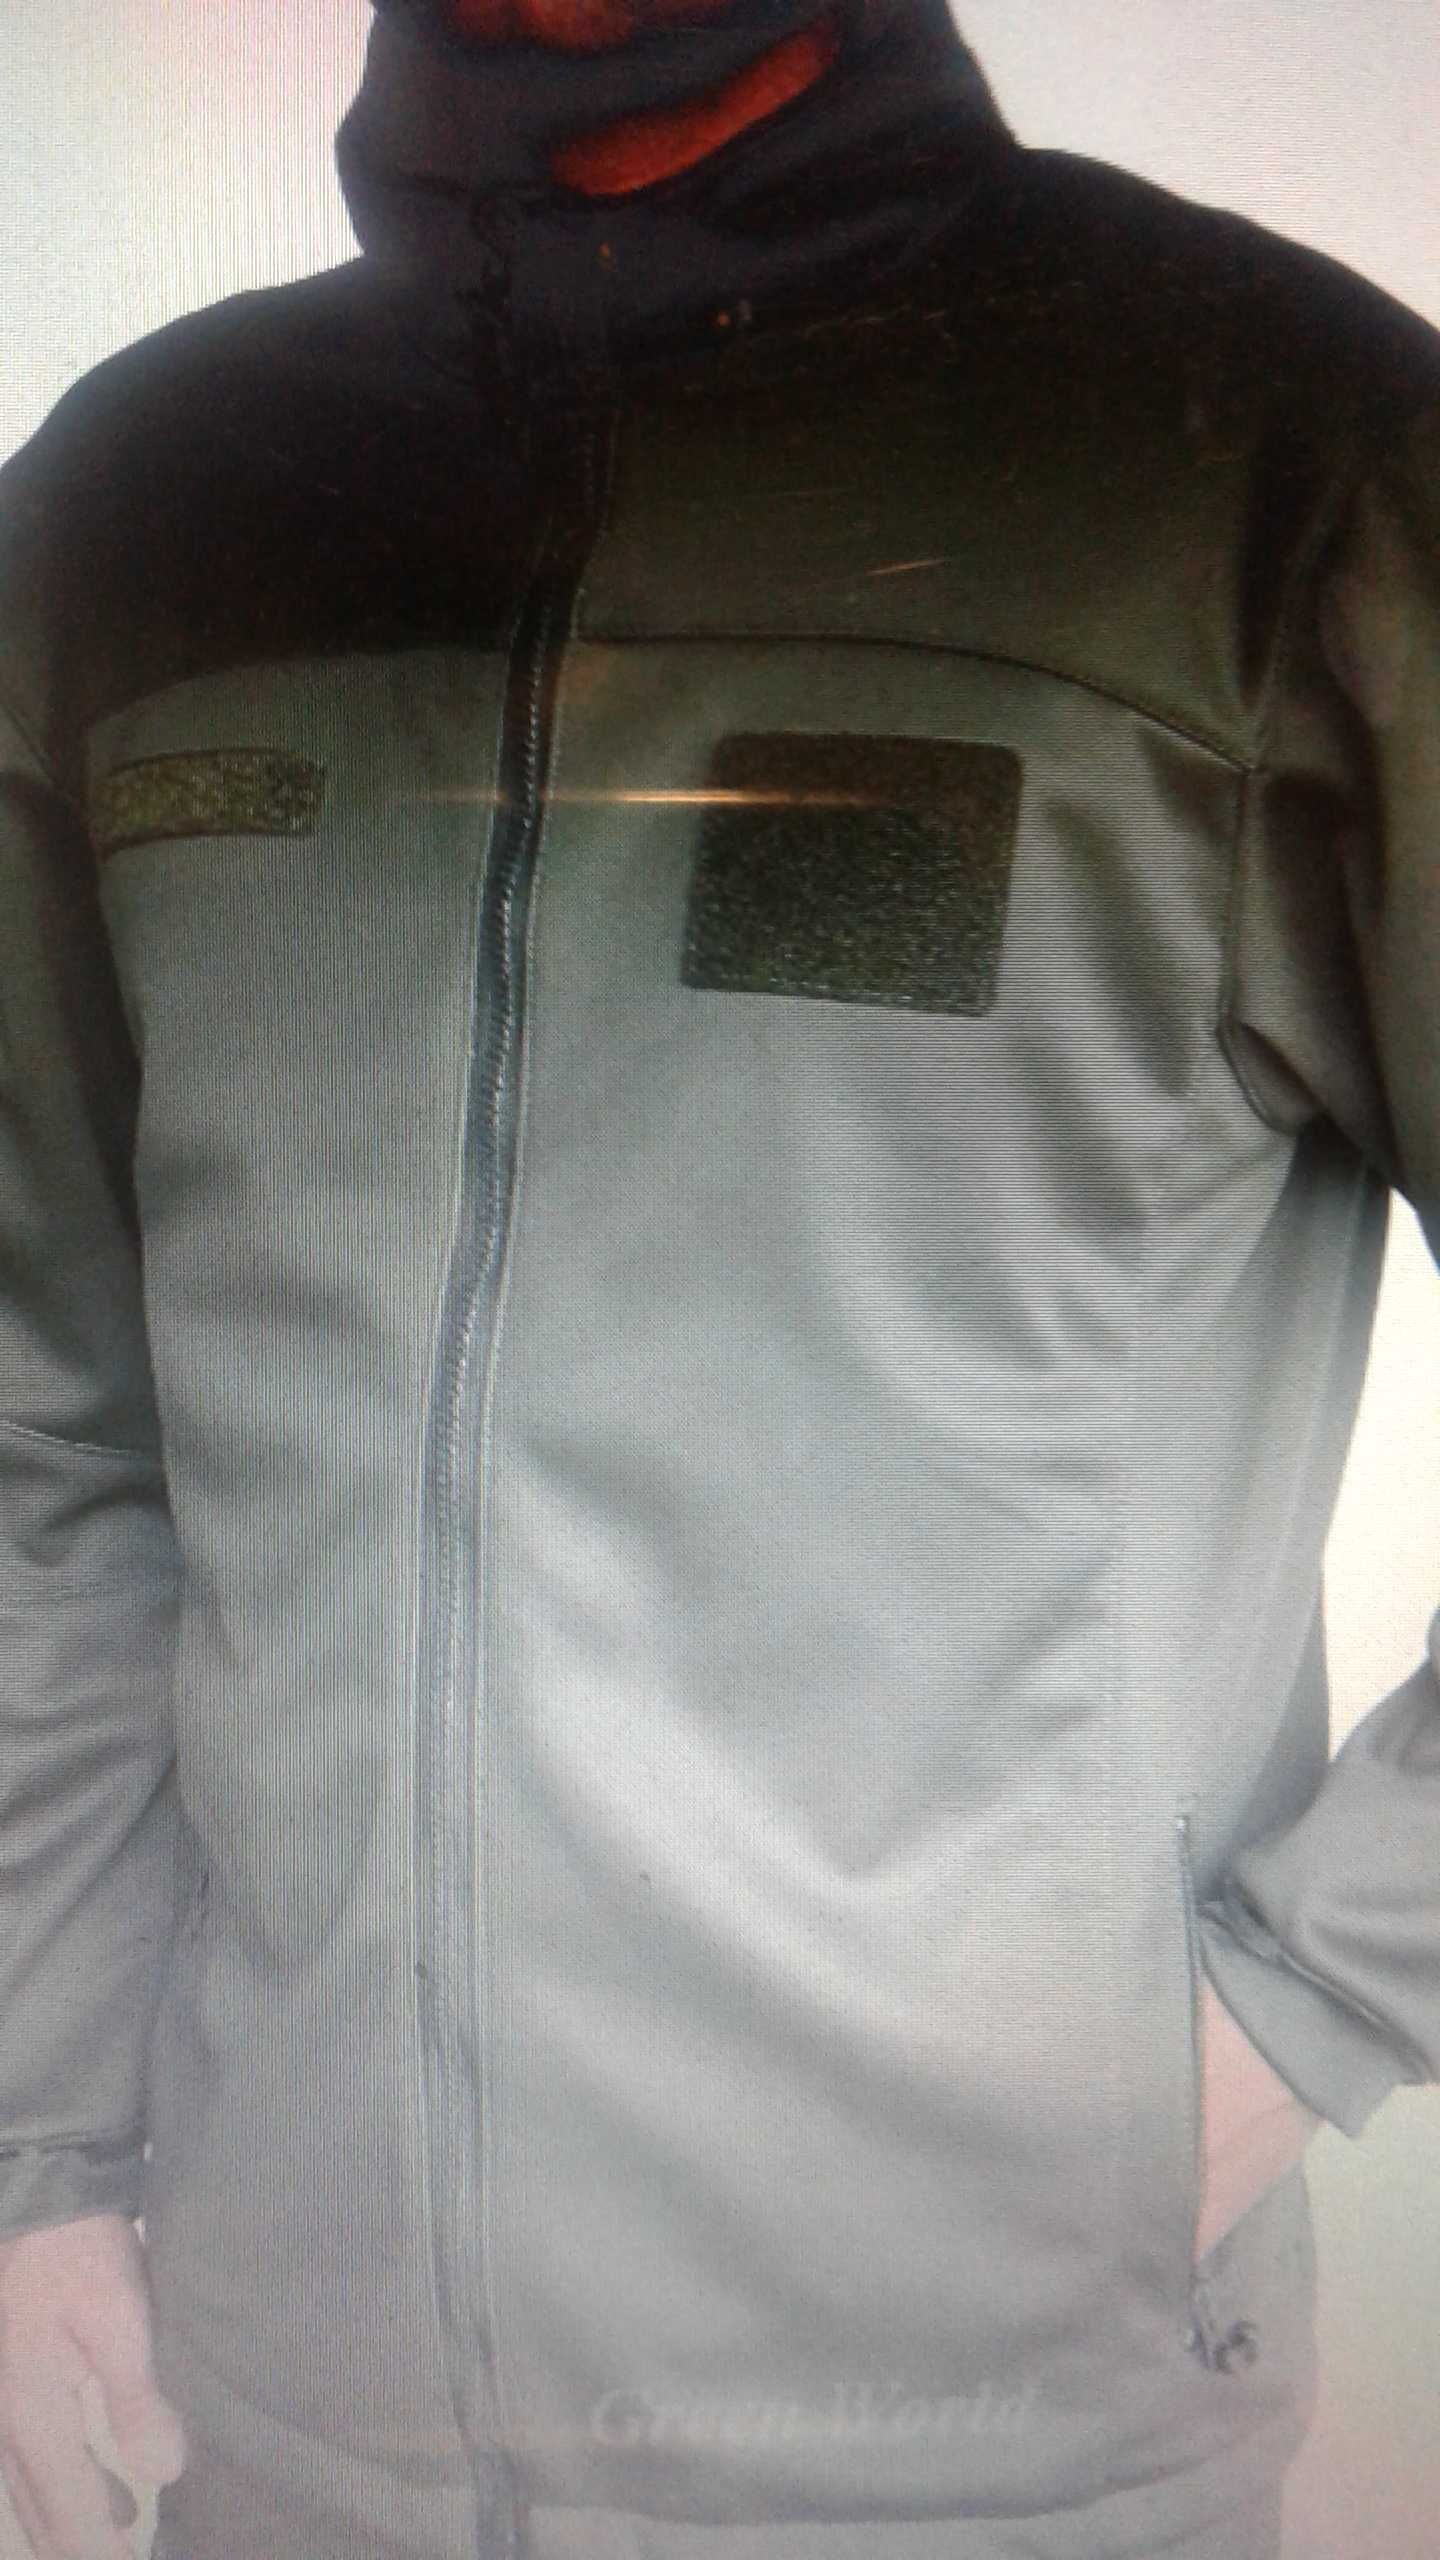 Bluza SOFTSHELL-ocieplacz pod kurtkę GORE-TEX roz. M/S NOWA wzór 2019.